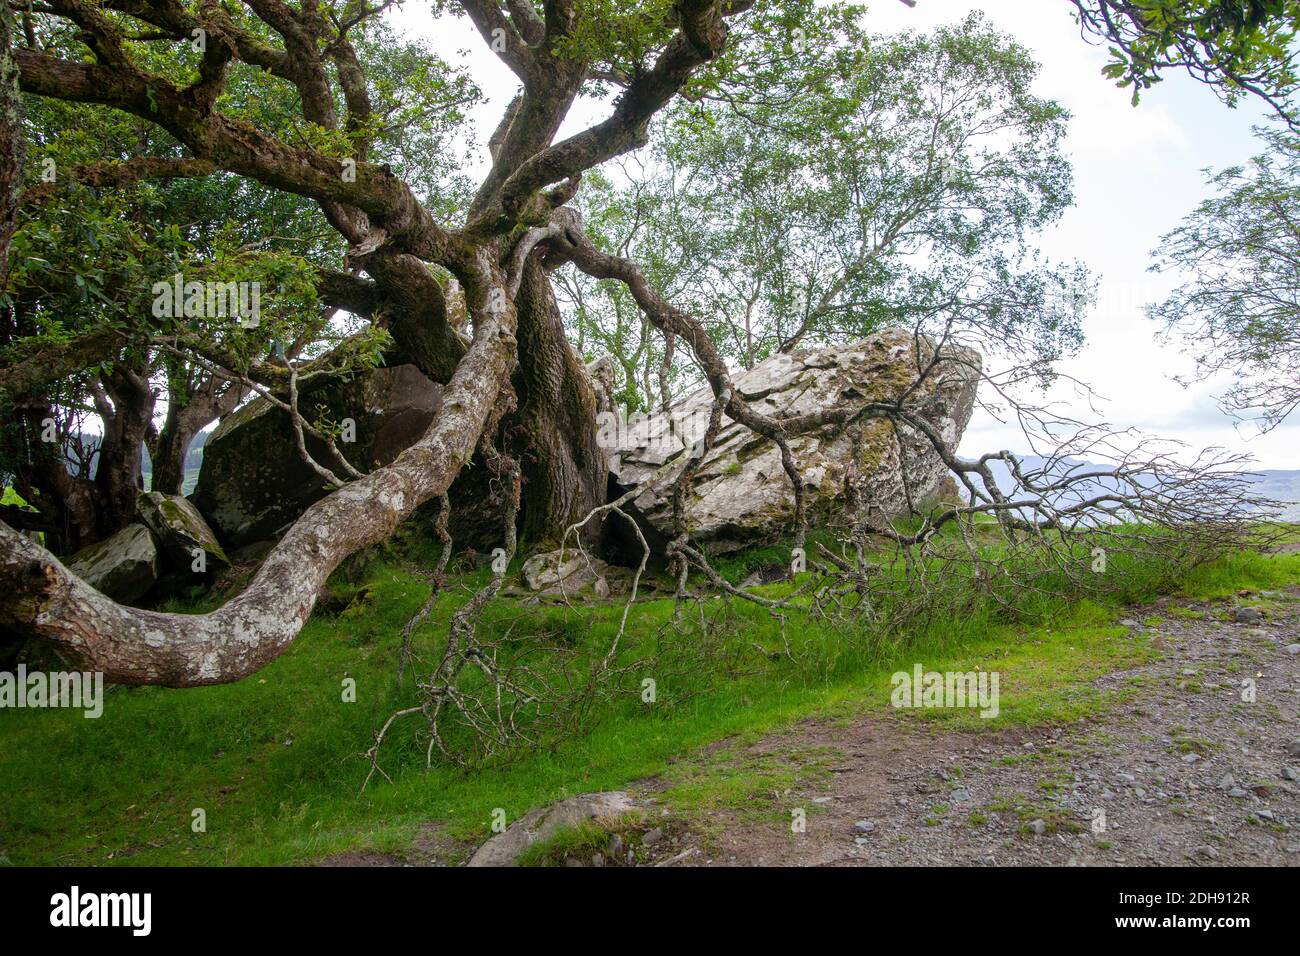 Un grand vieux arbre mystique sur une herbe verte avec il y a de gros rochers autour Banque D'Images